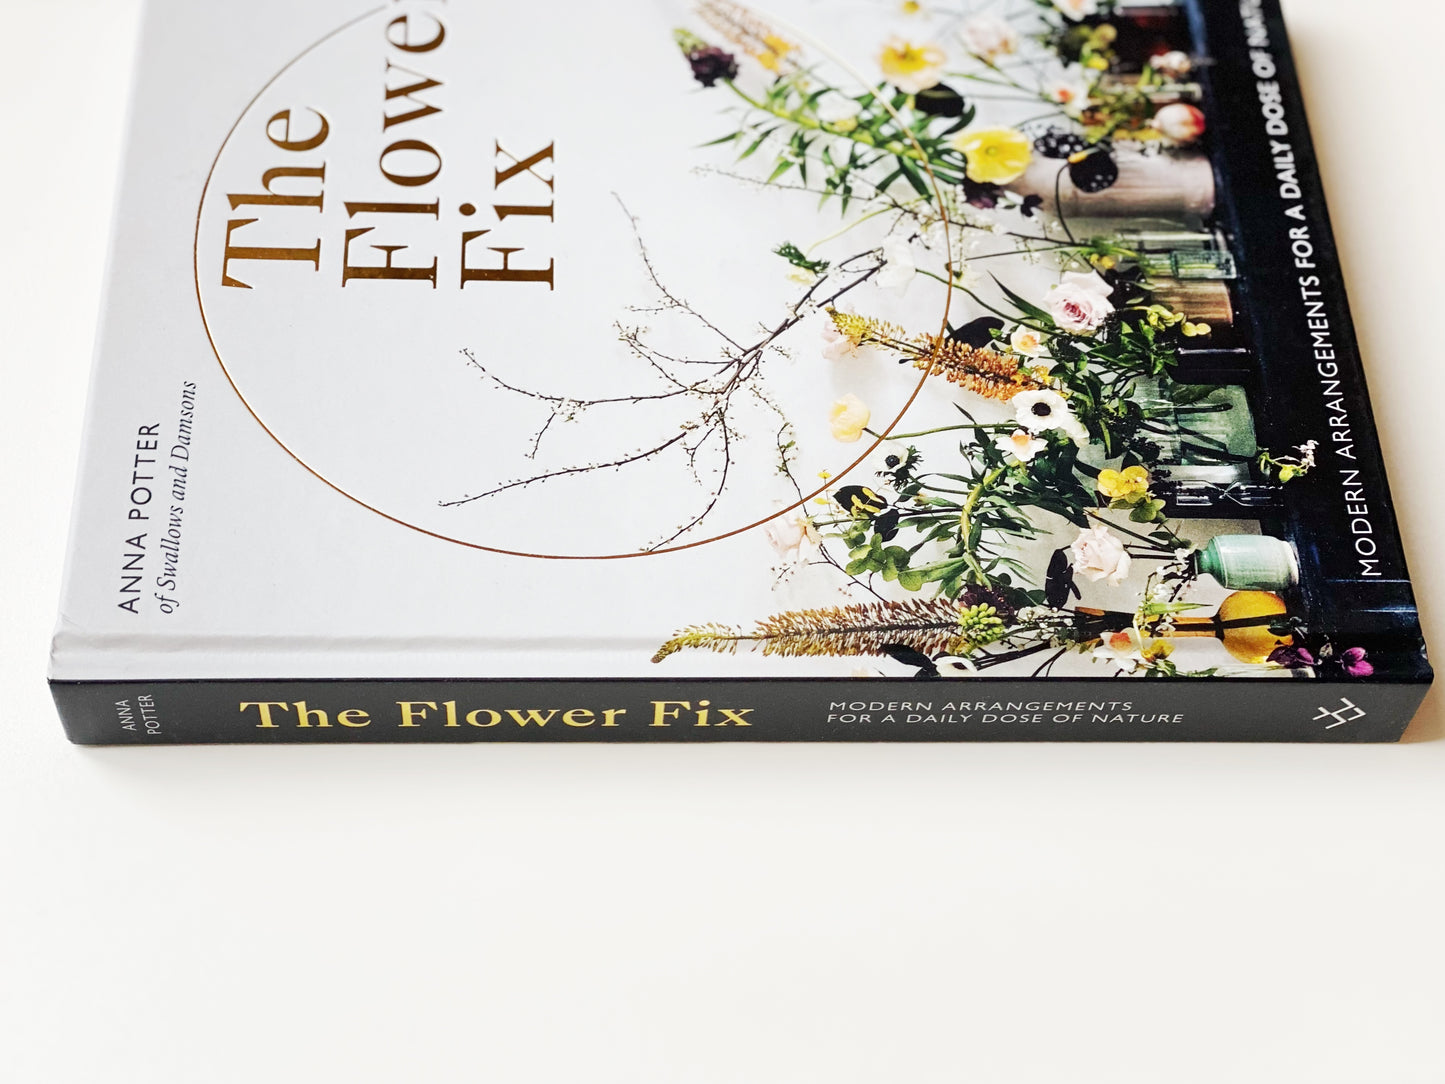 The Flower Fix Book